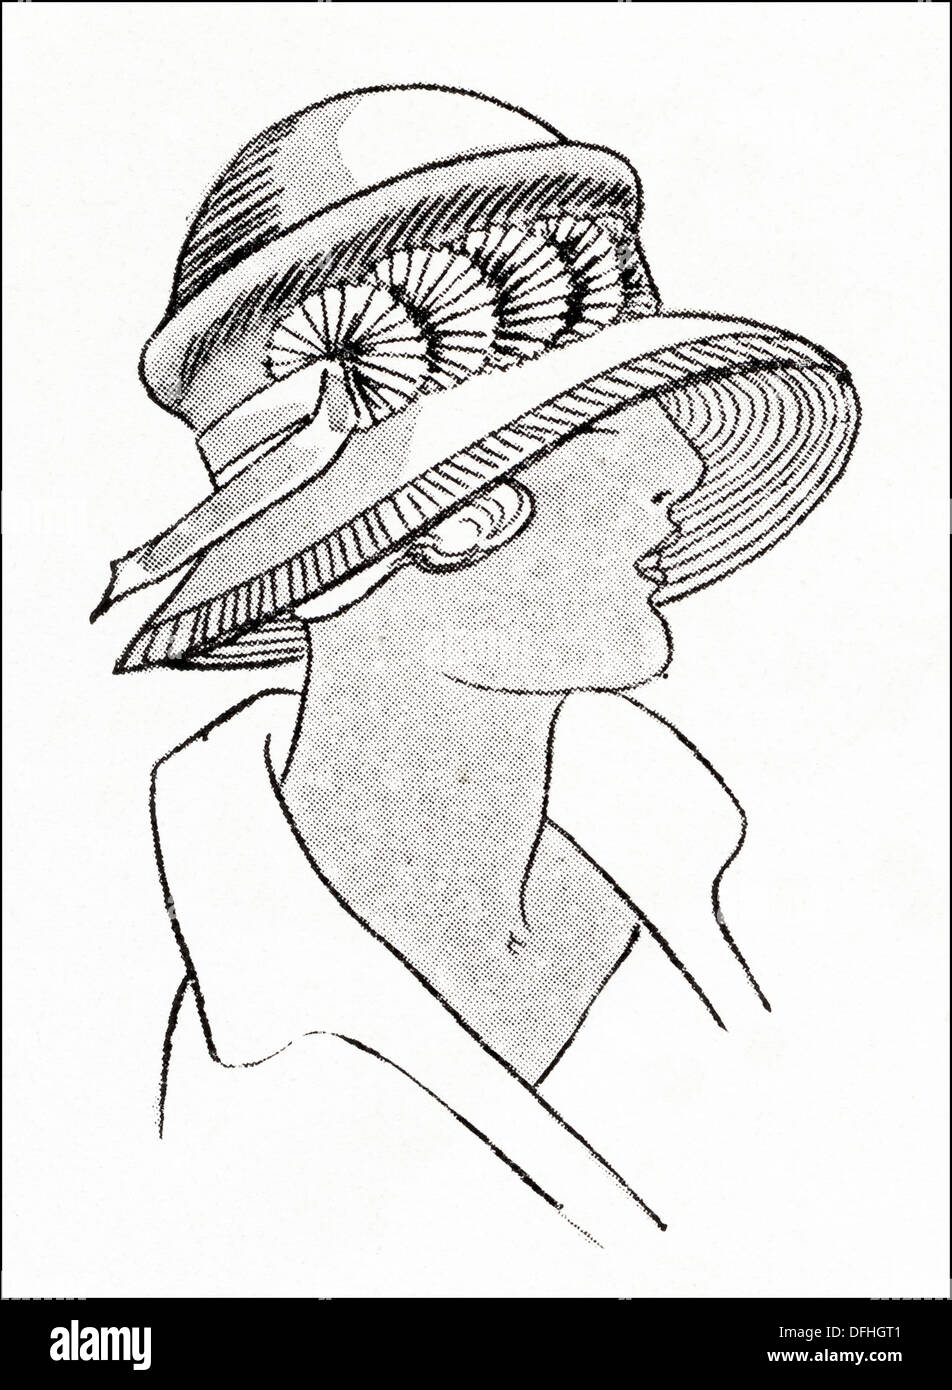 La mode garçonne des années 1920. Mail Order hat, ombragé dans la conception de champignons tagel fine garnie de paille plissé plein fans de crêpe de Chine. Illustration originale d'un magazine de mode féminine vers 1924 Banque D'Images